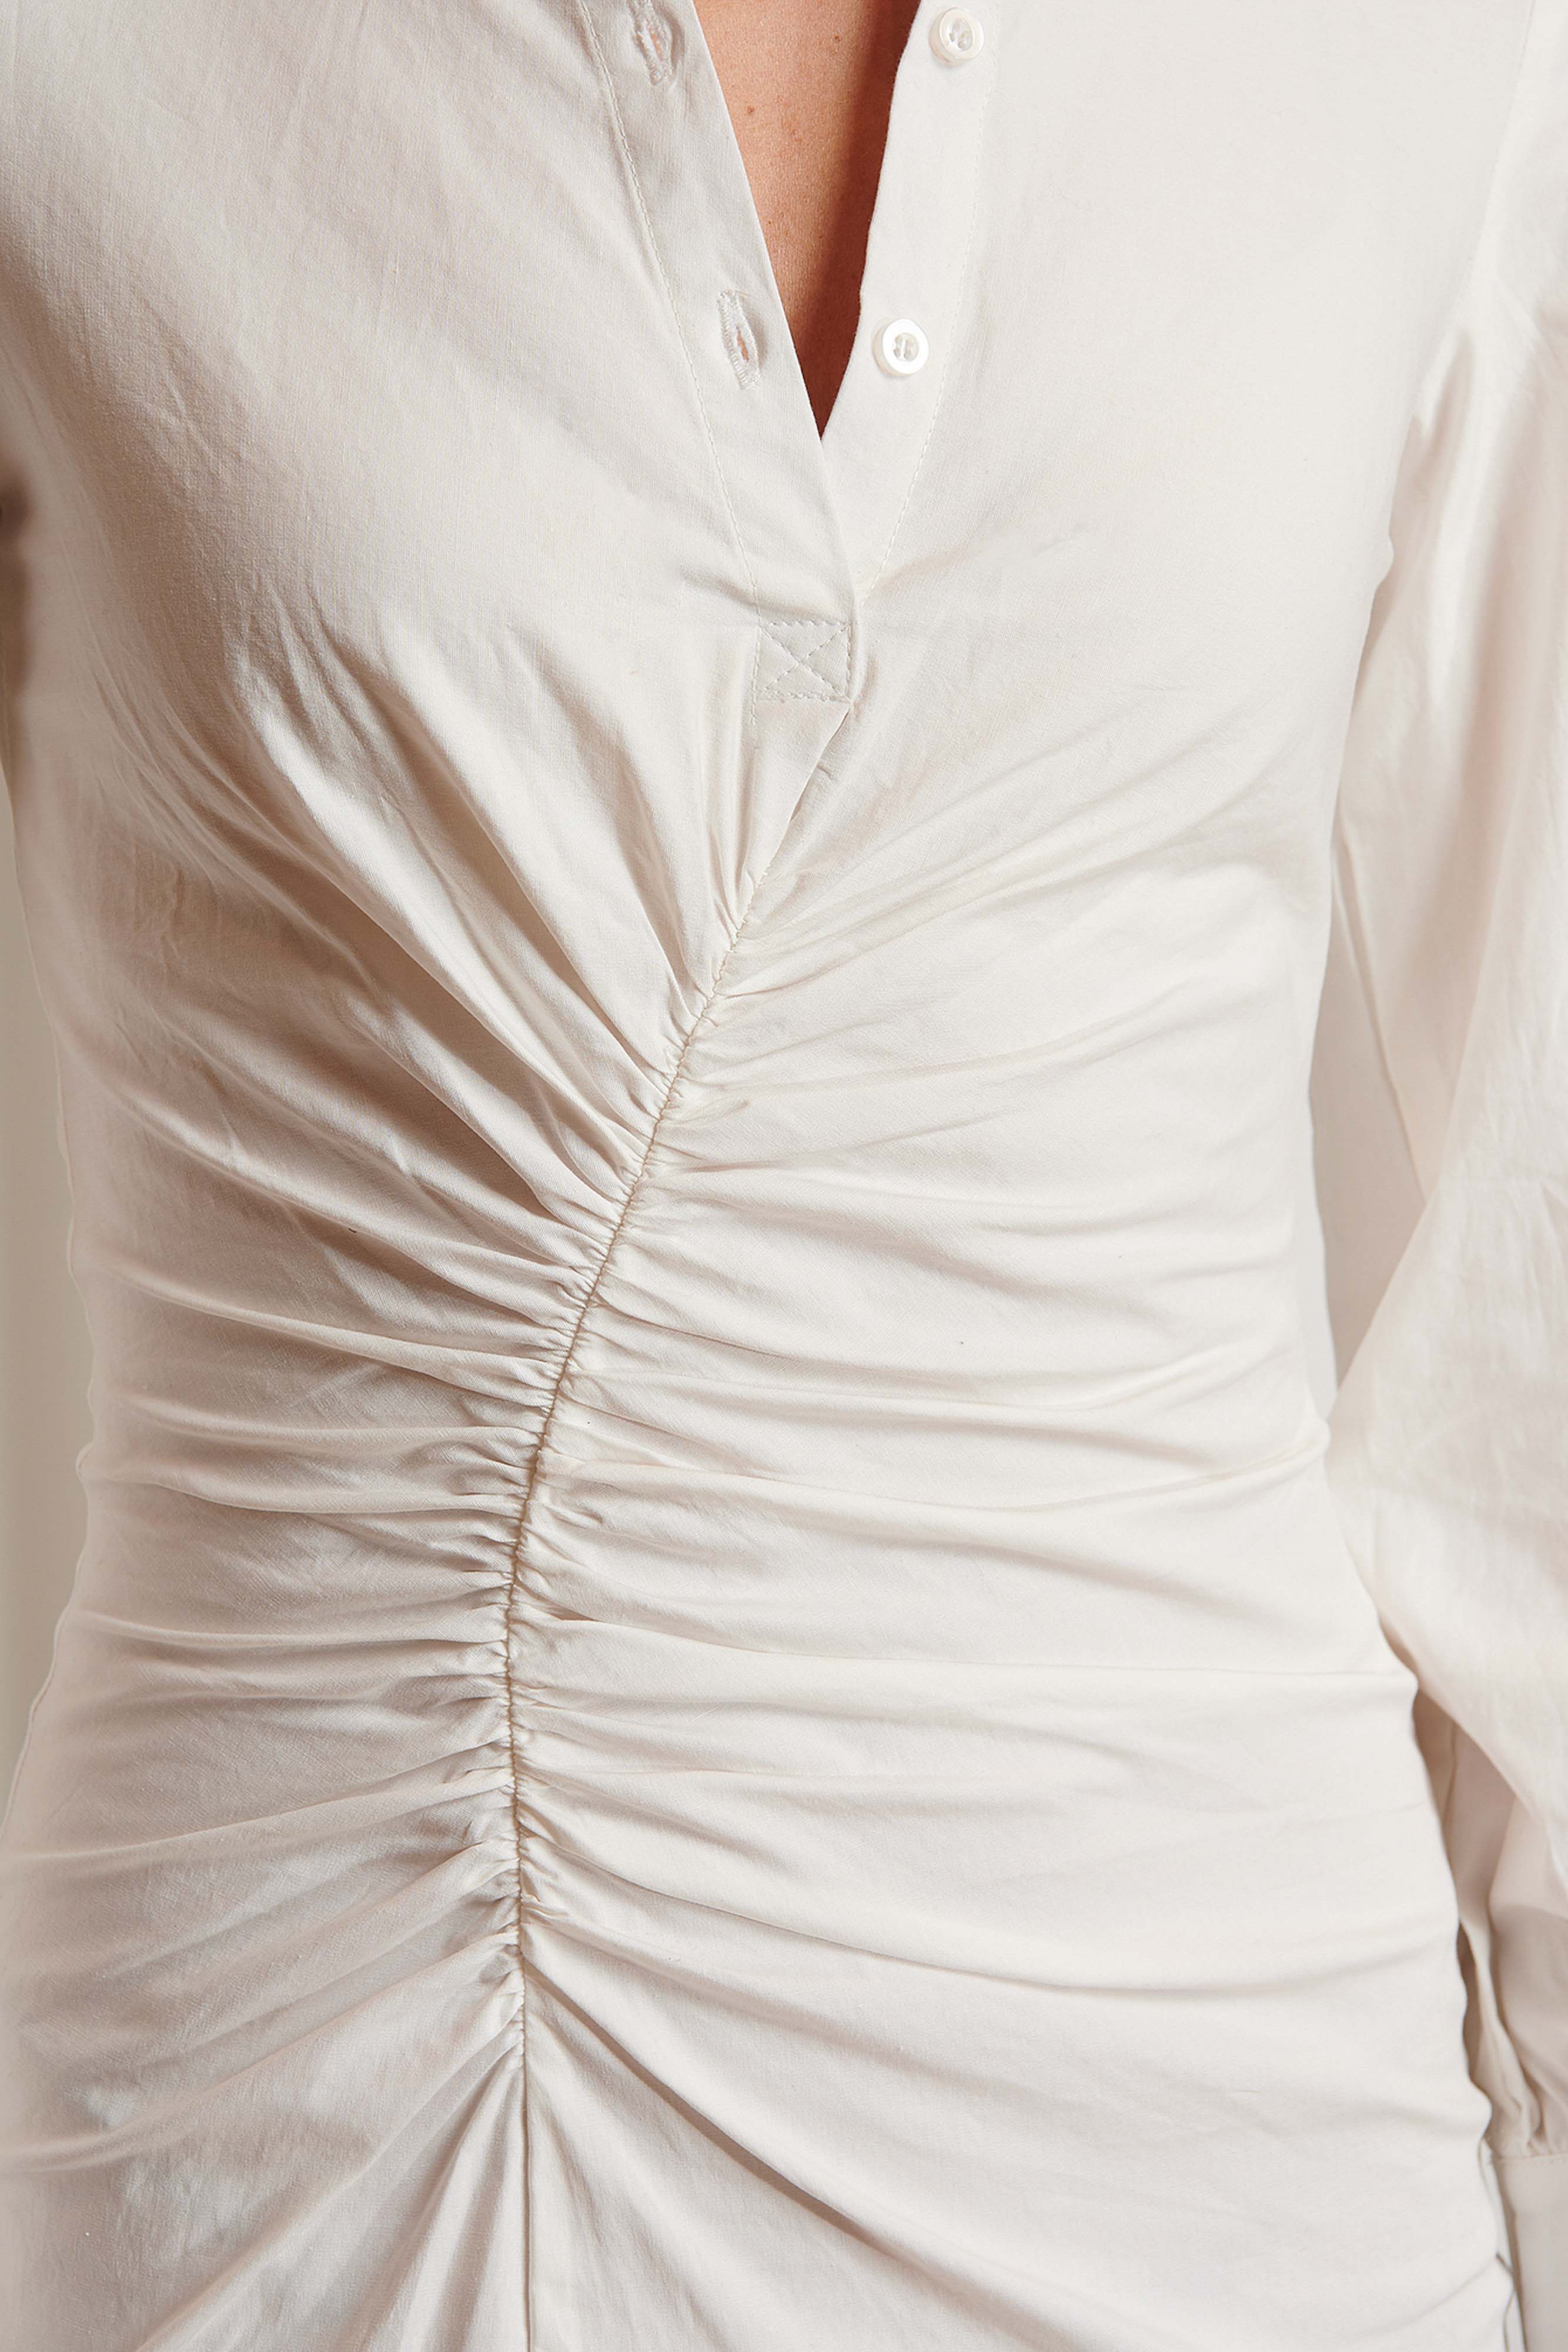 Draped Shirt Dress - White - Emma Ellingsen - Kjoler - VILLOID.no